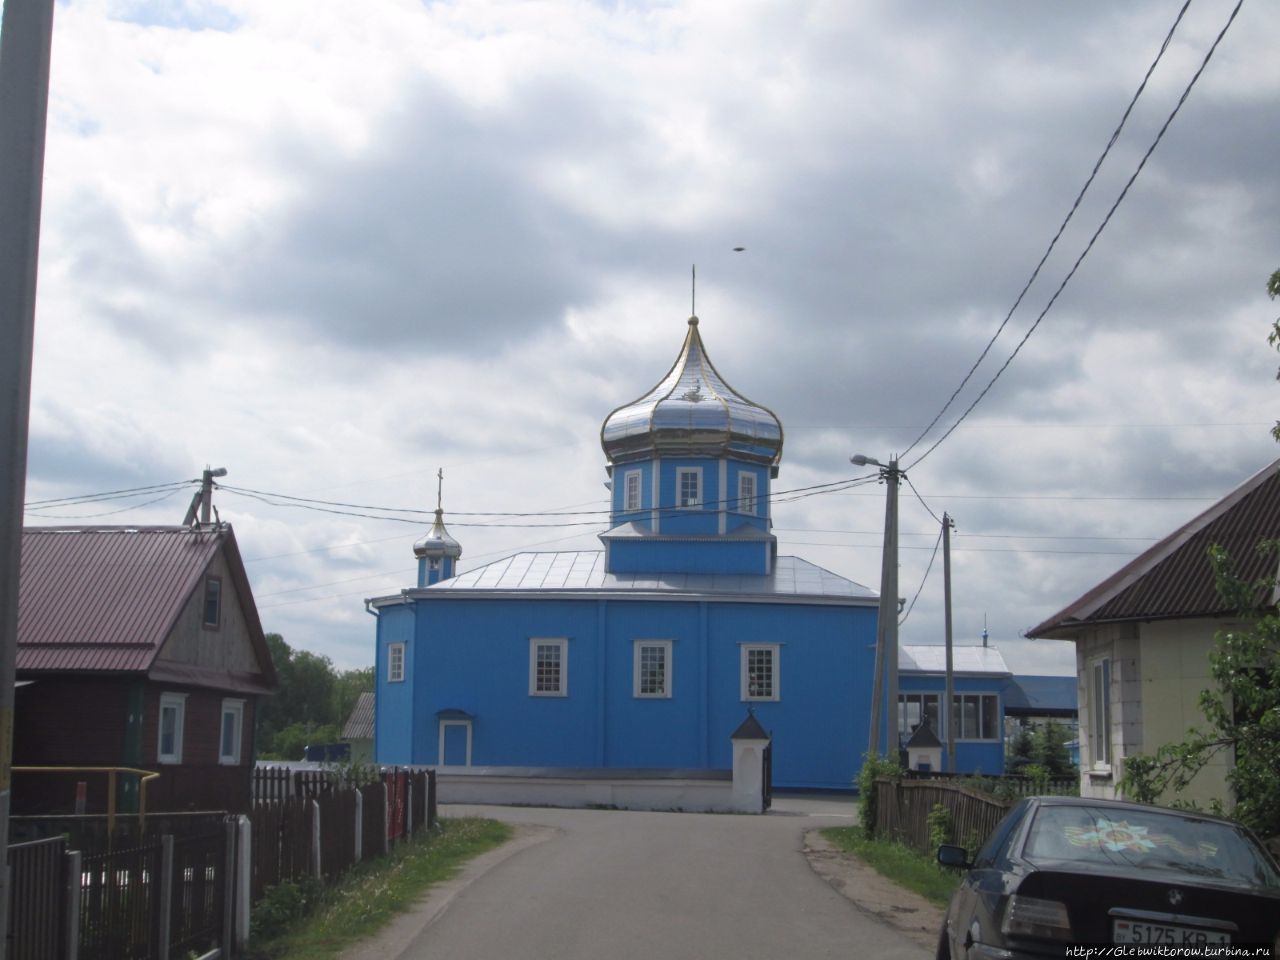 Свято-Николаевская церковь / St. Nicholas Church